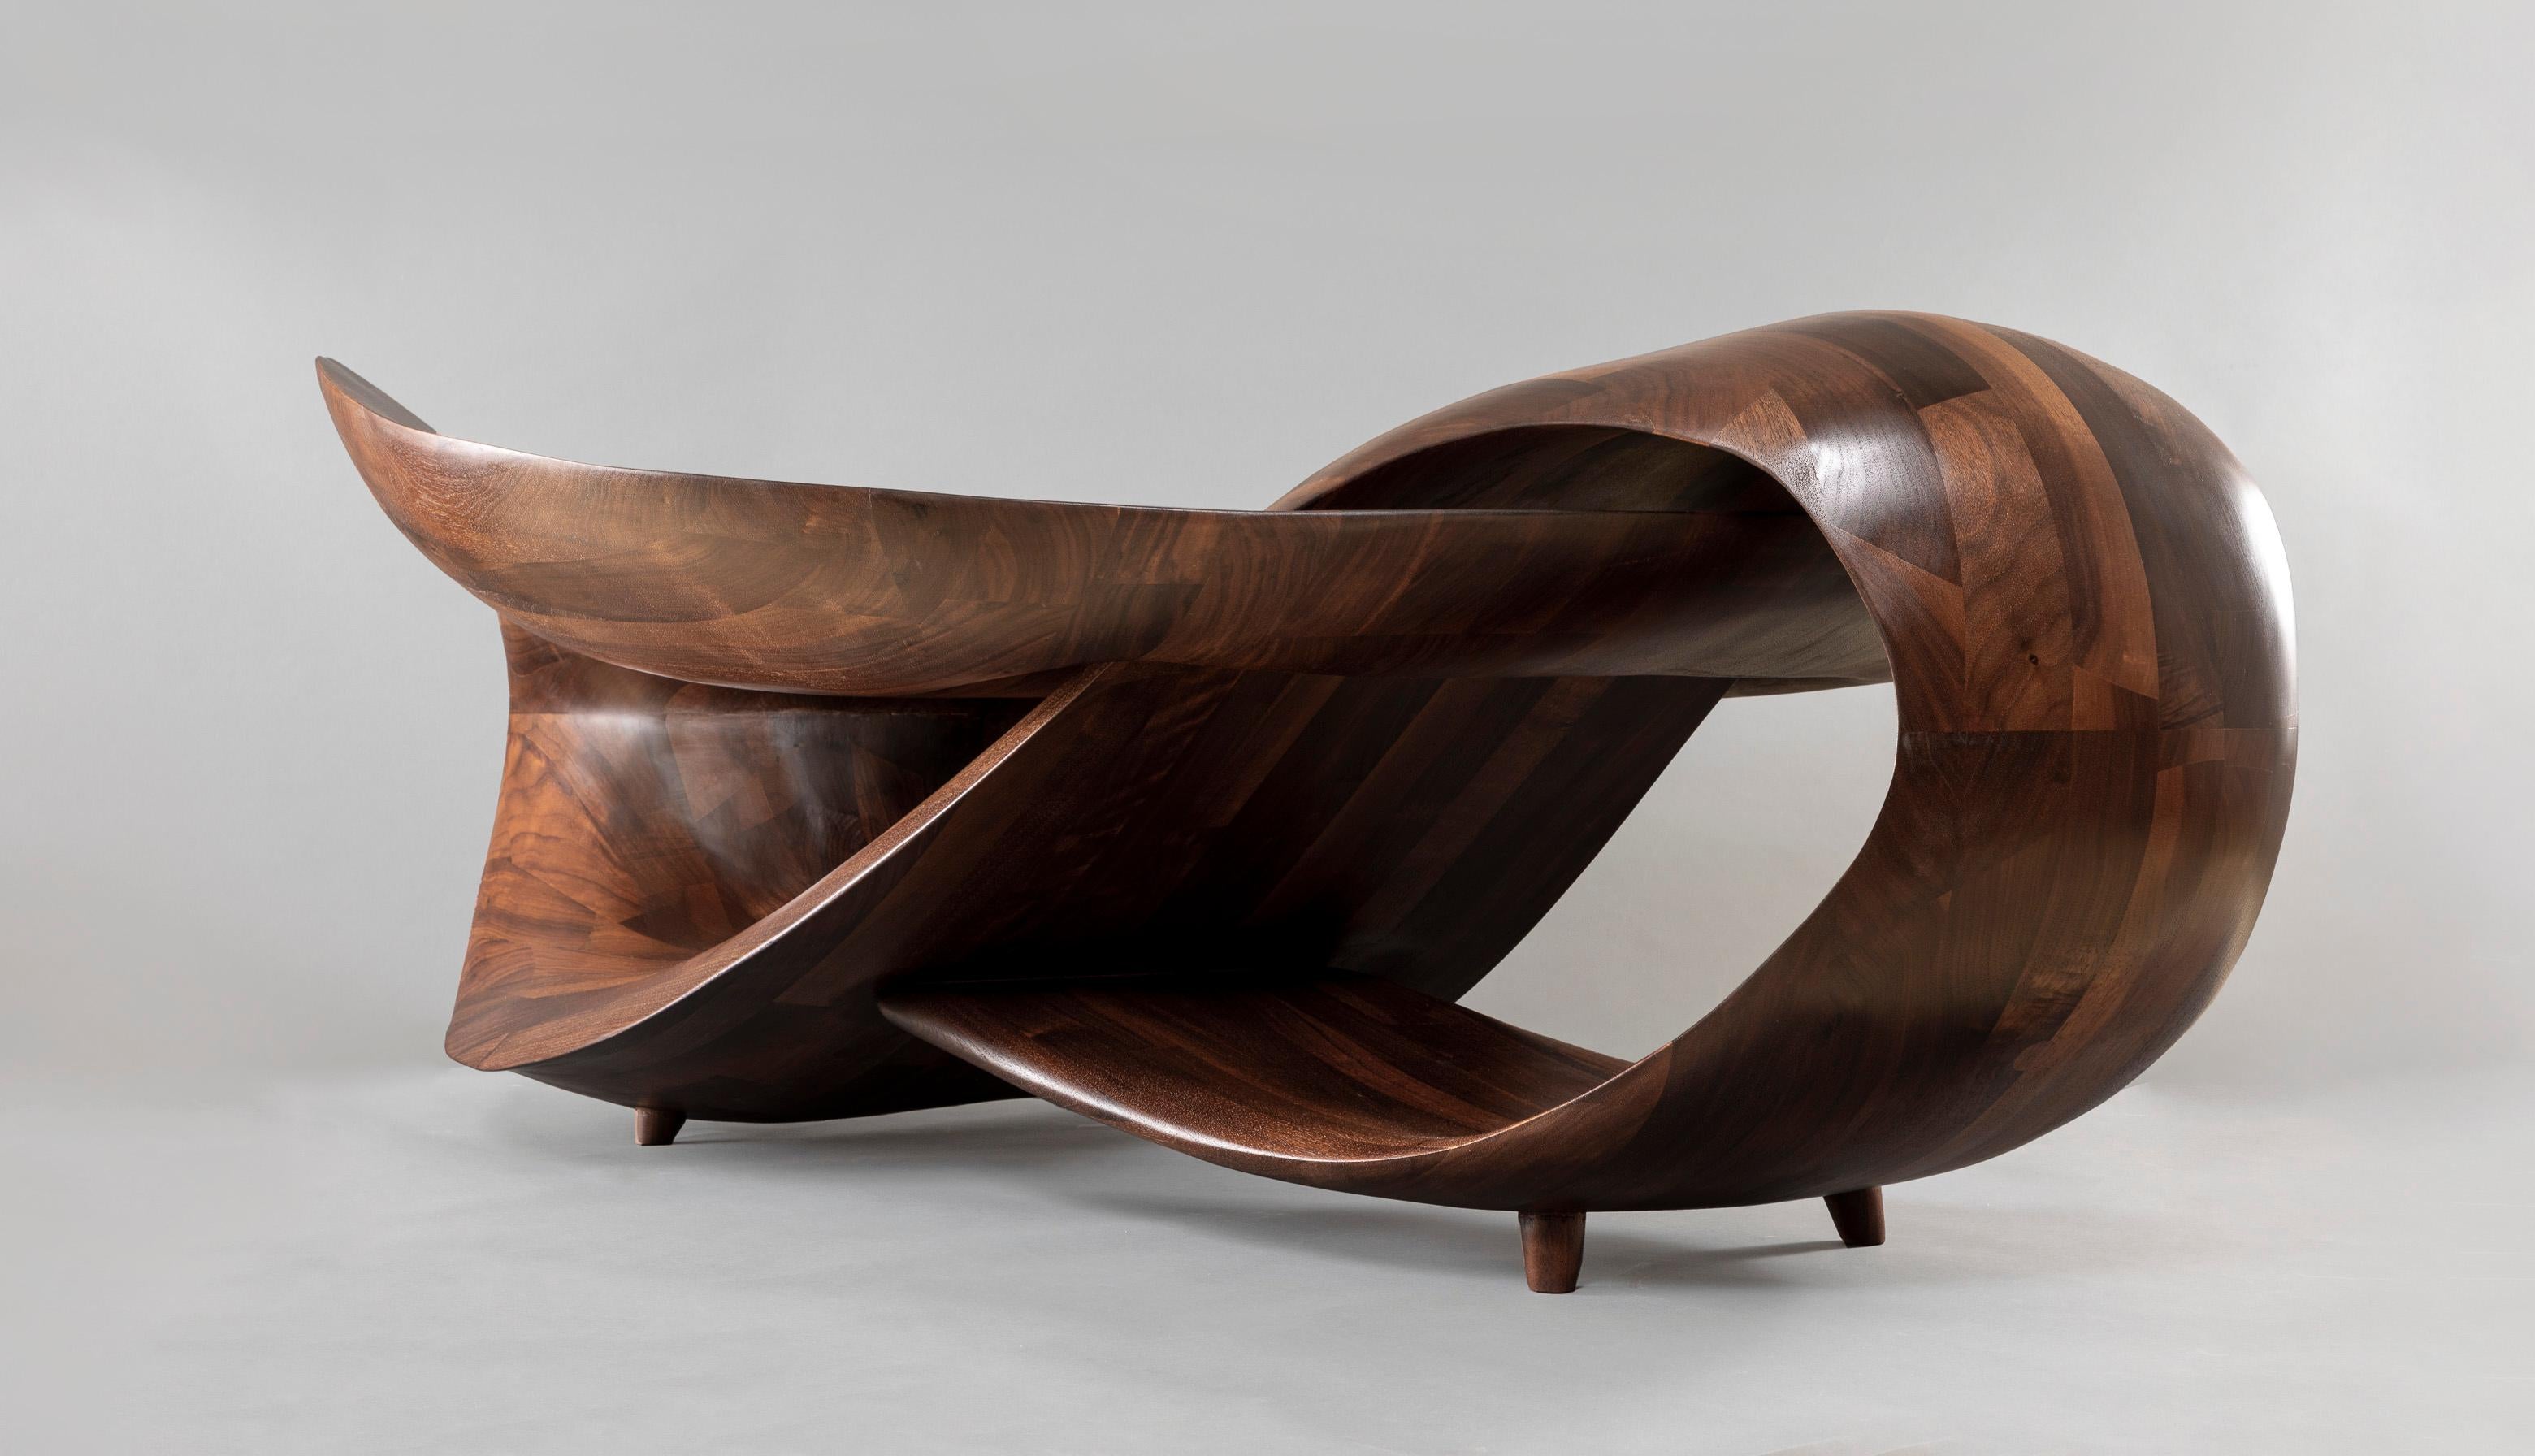 Contemporary Sculptural Coffee Table by Gildas Berthelot